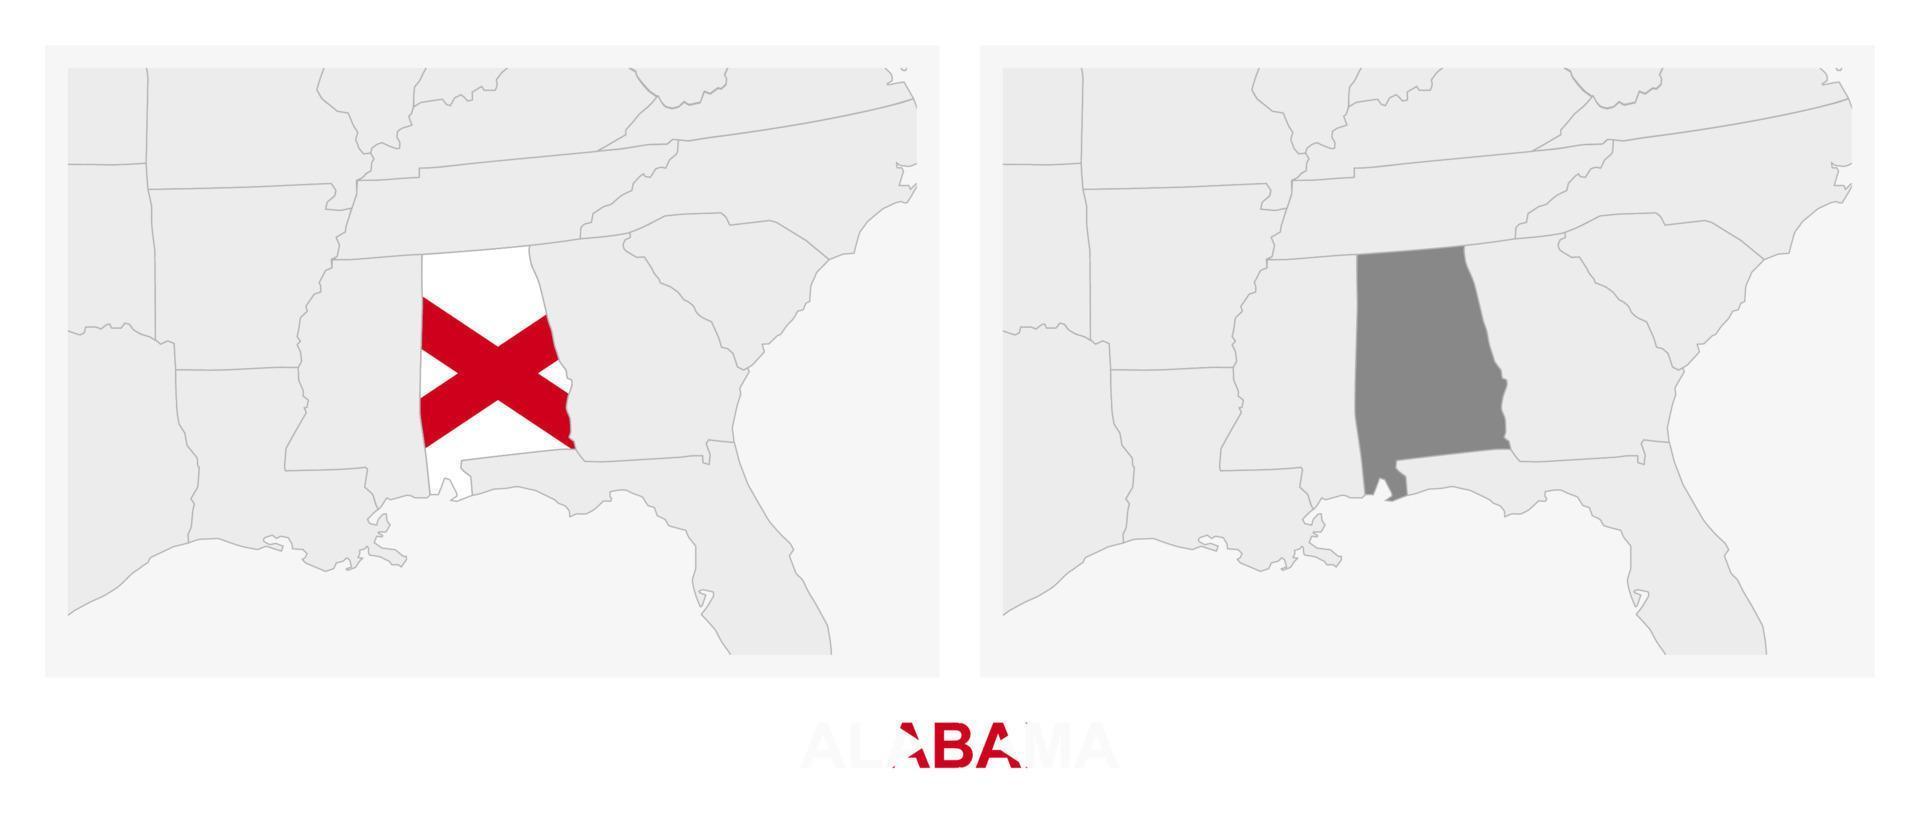 zwei versionen der karte des us-staates alabama, mit der flagge von alabama und dunkelgrau hervorgehoben. vektor